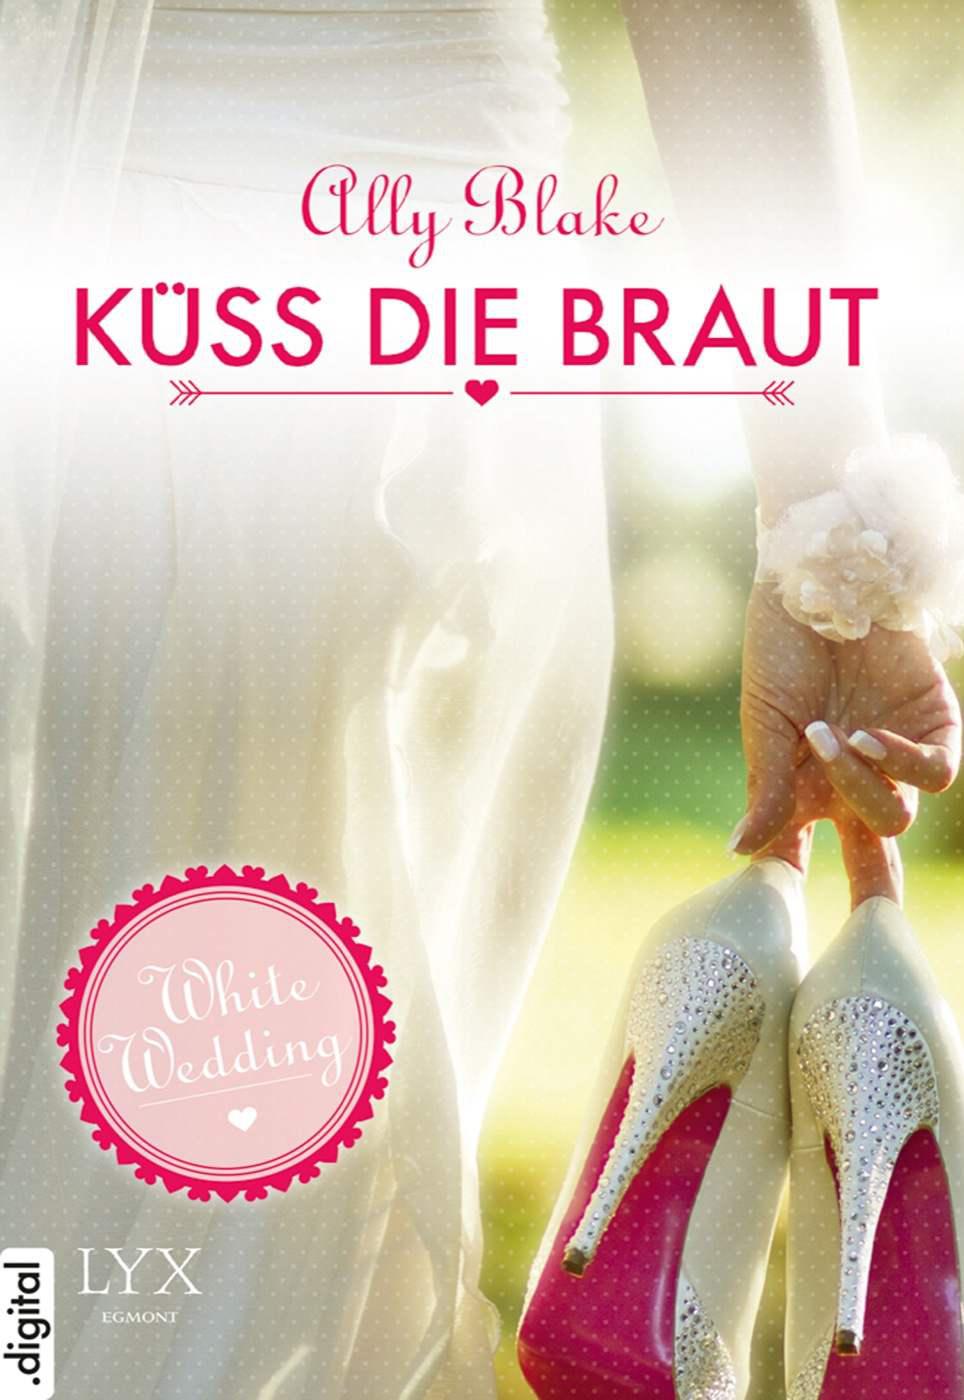 White Wedding - Küss die Braut!